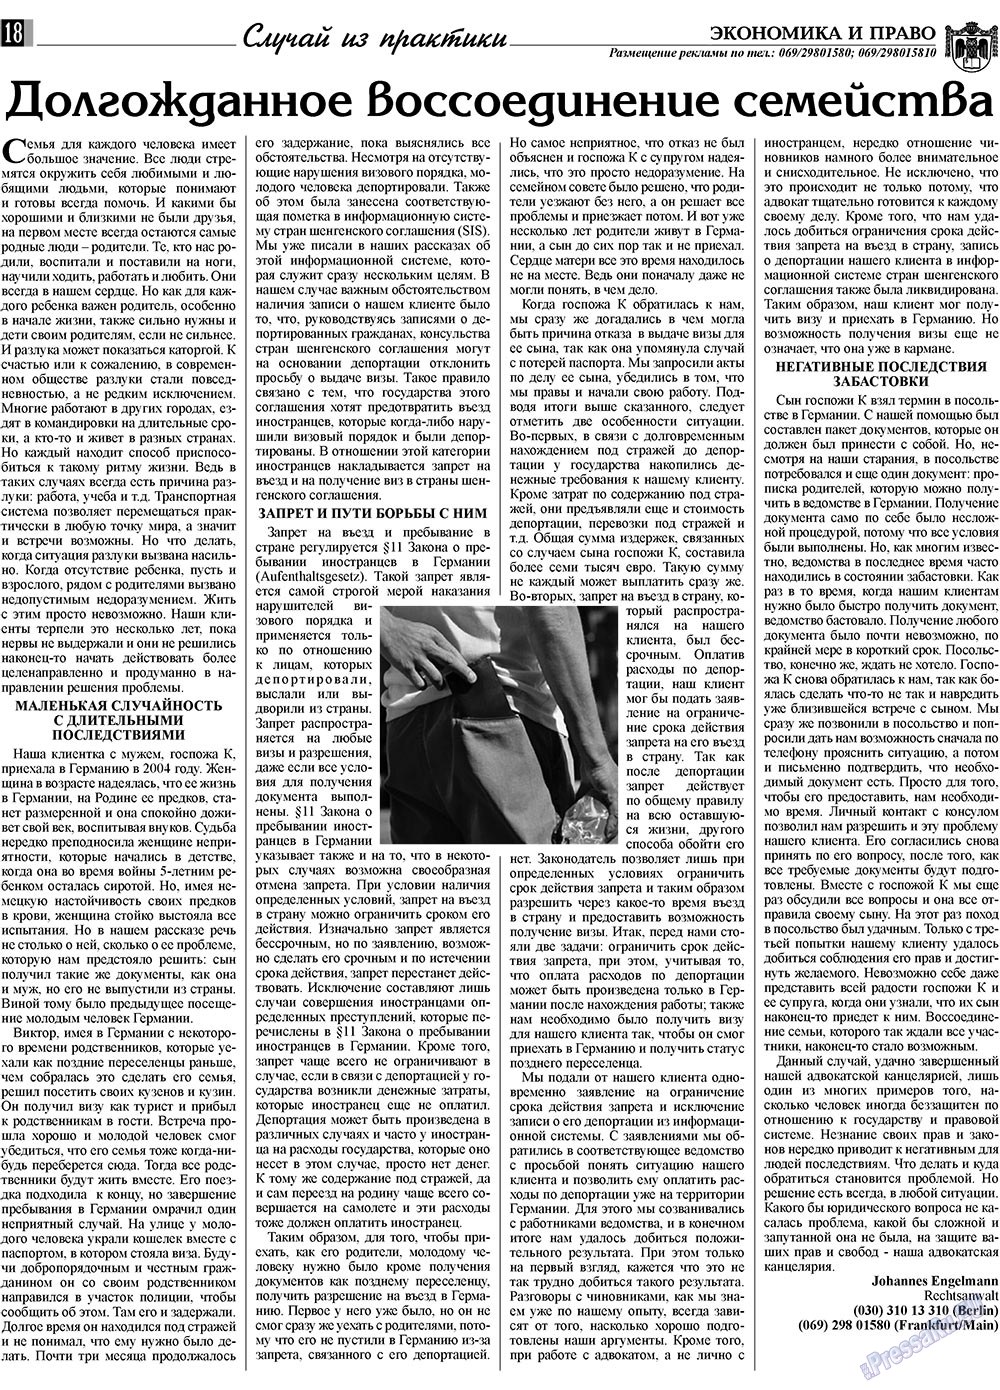 Экономика и право, газета. 2009 №1 стр.18